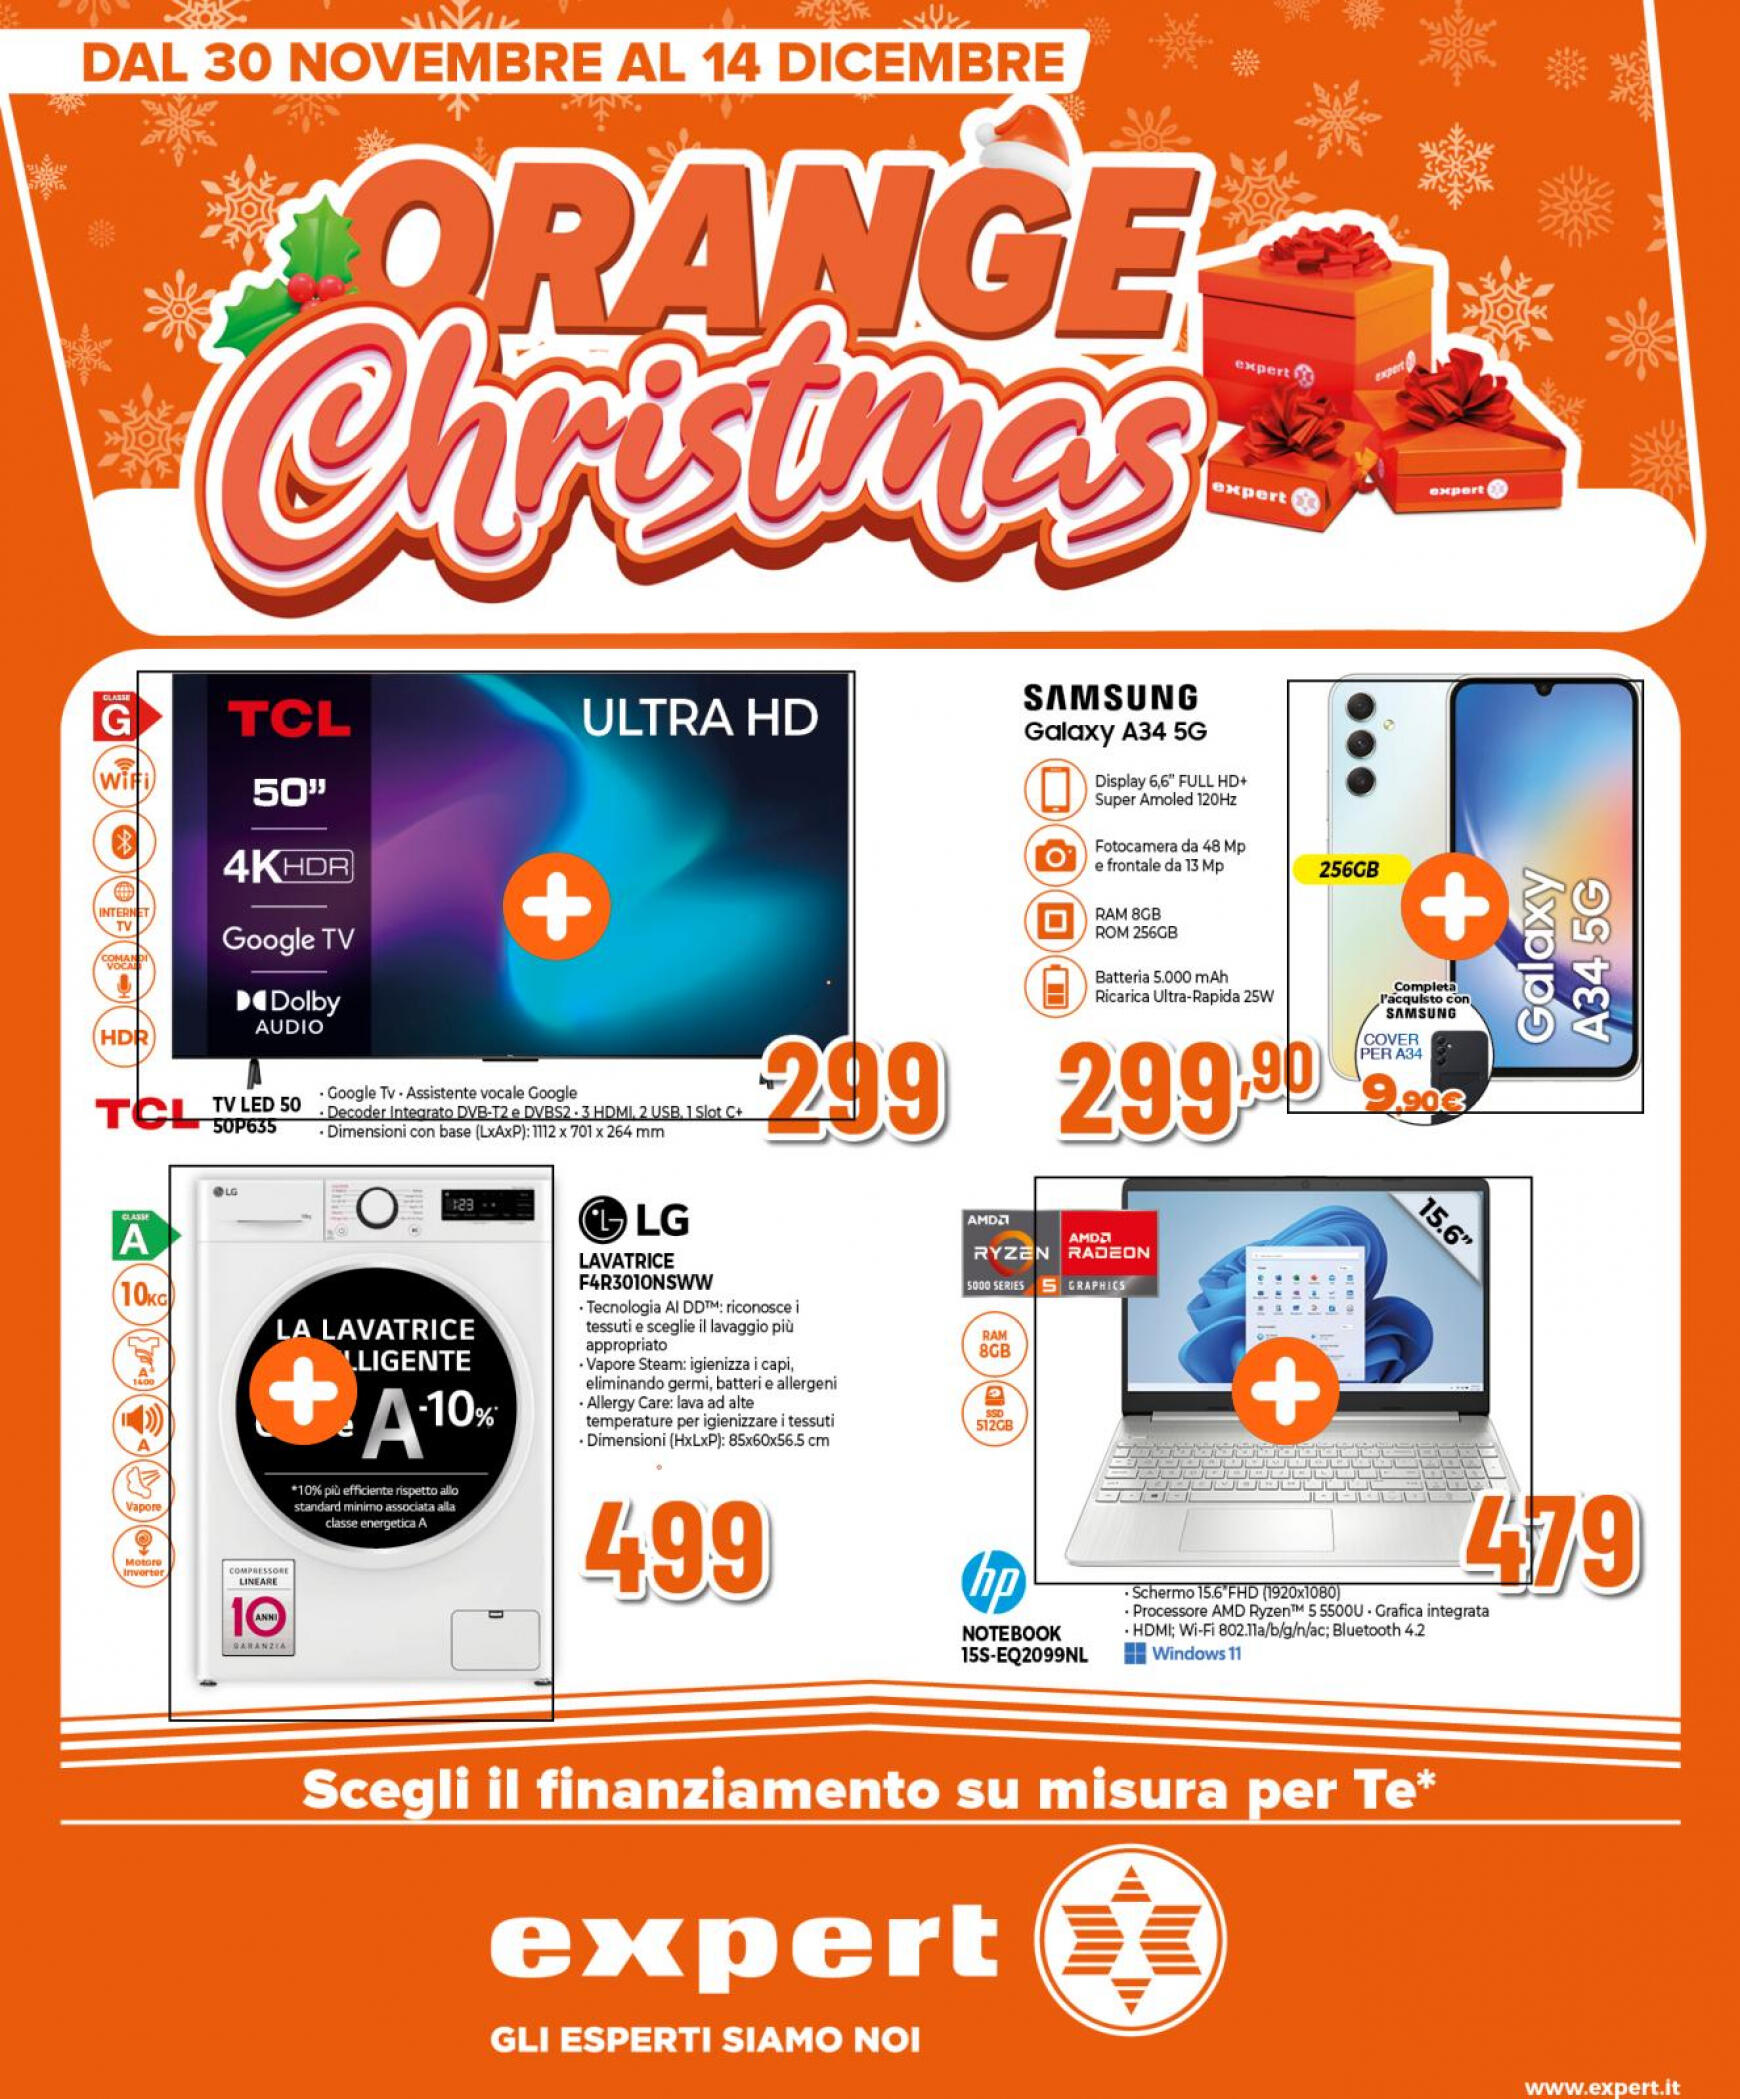 expert - expert - Orange Christmas valido da 30.11.2023 - page: 1